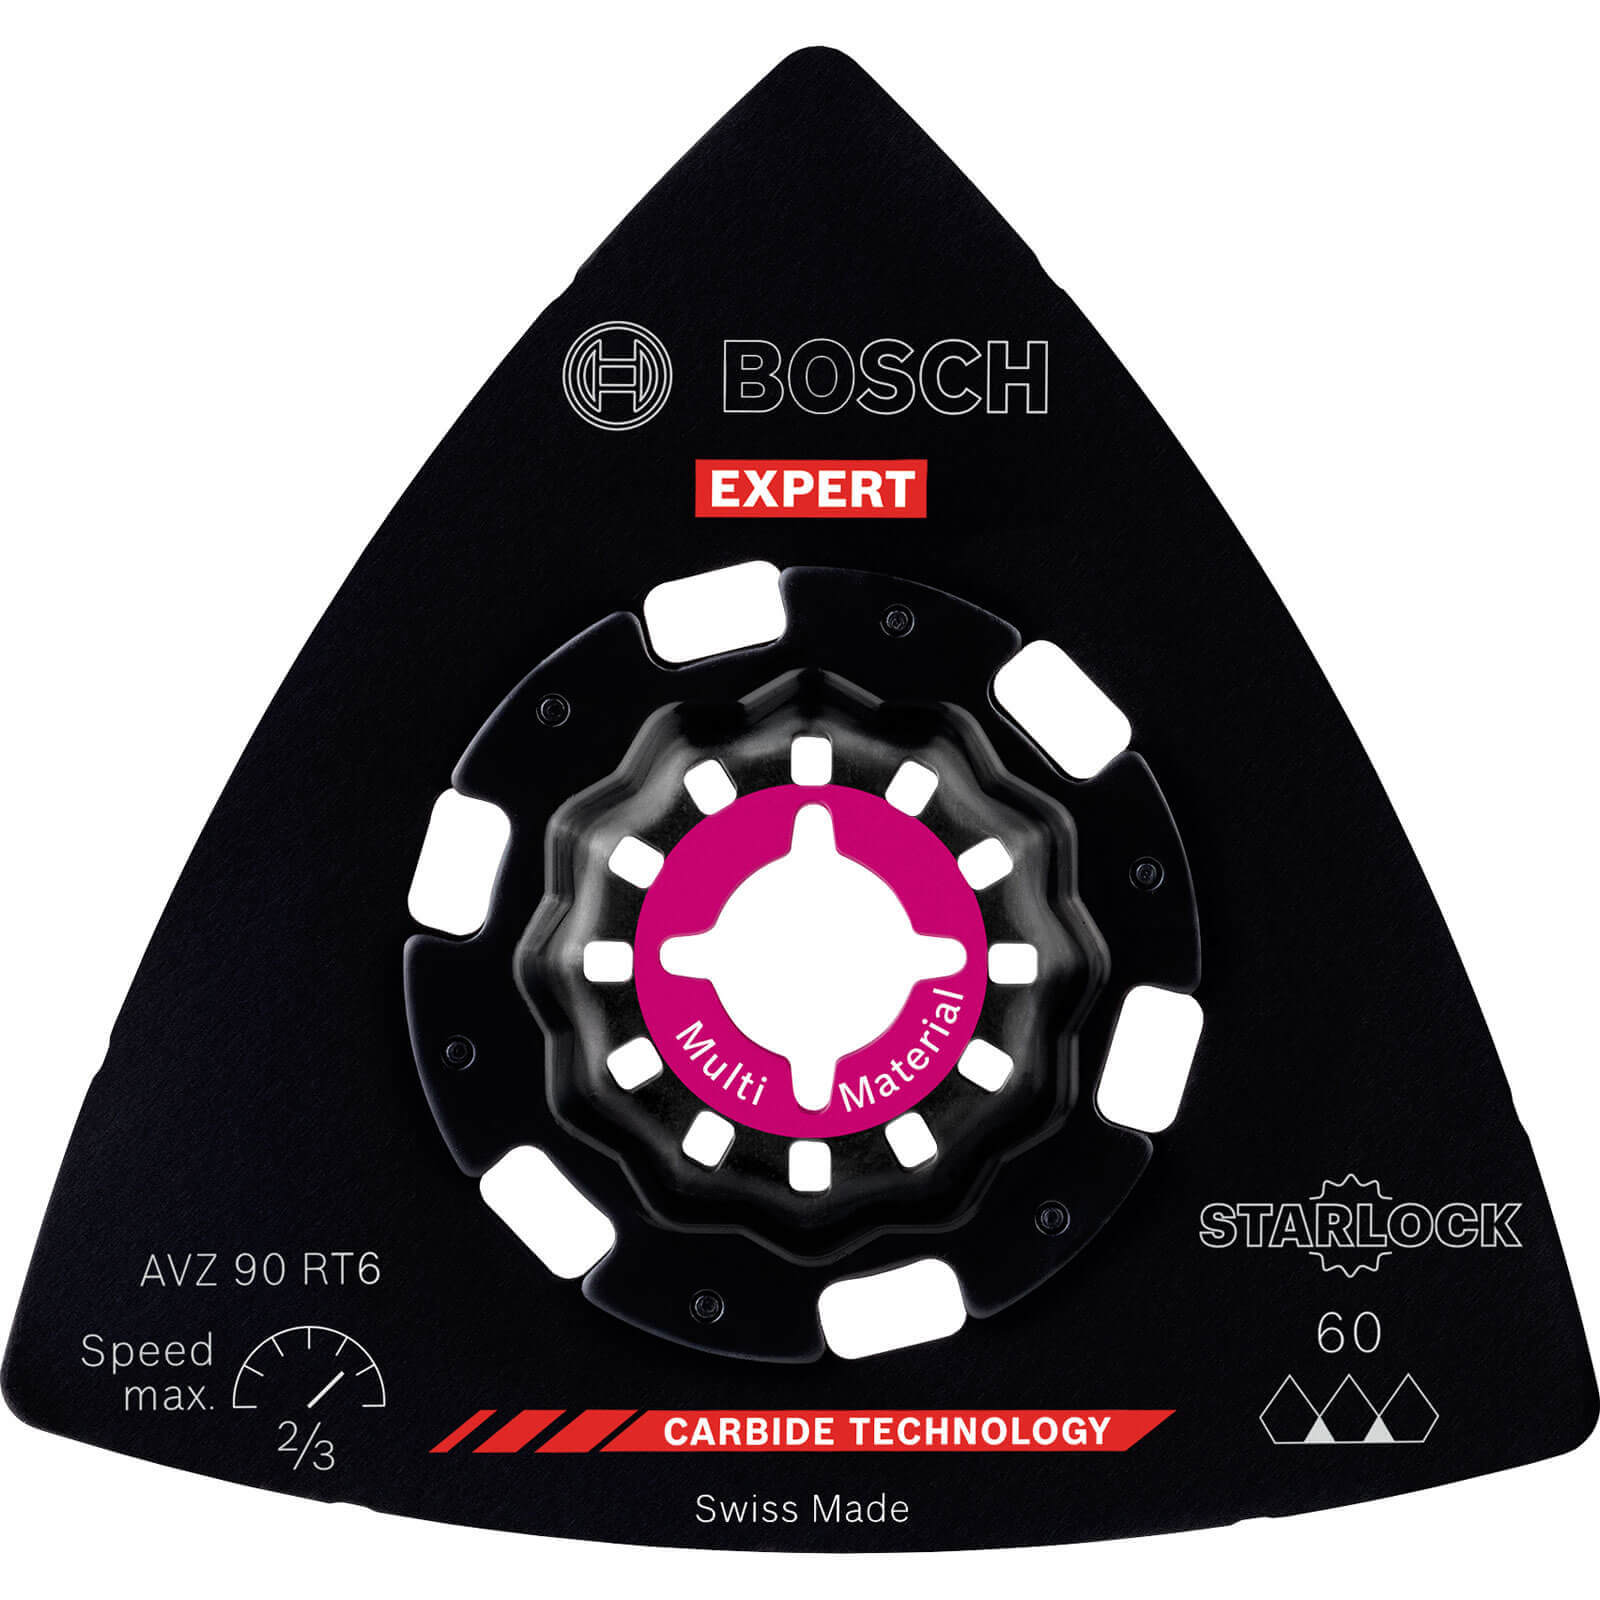 Image of Bosch Expert AVZ 90 RT Starlock Oscillating Multi Tool Sanding Plate 90mm 60g Pack of 1